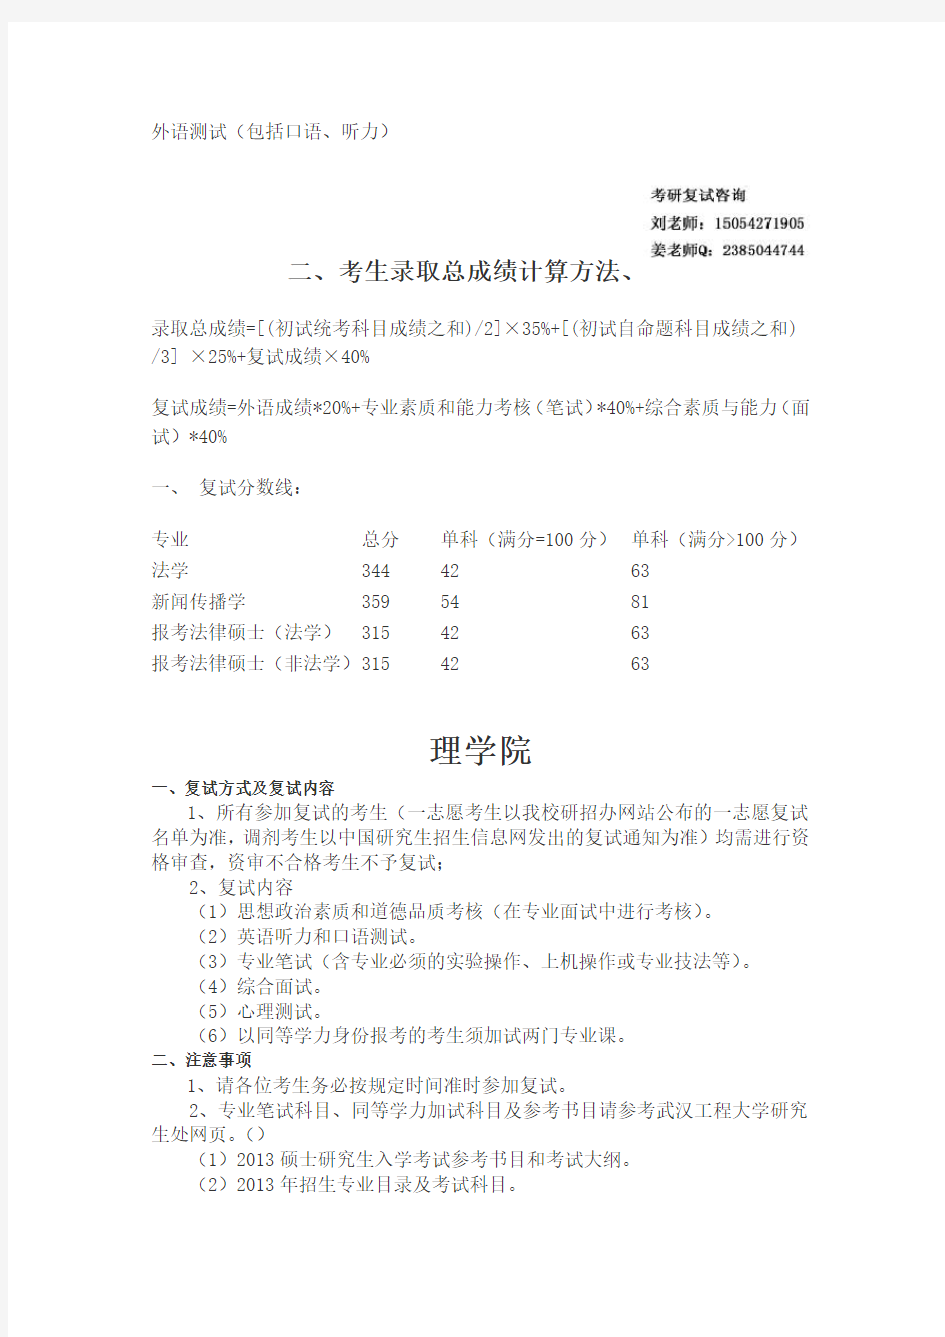 武汉理工大学考研复试内容-复试参考书目-复试准备-复试资料